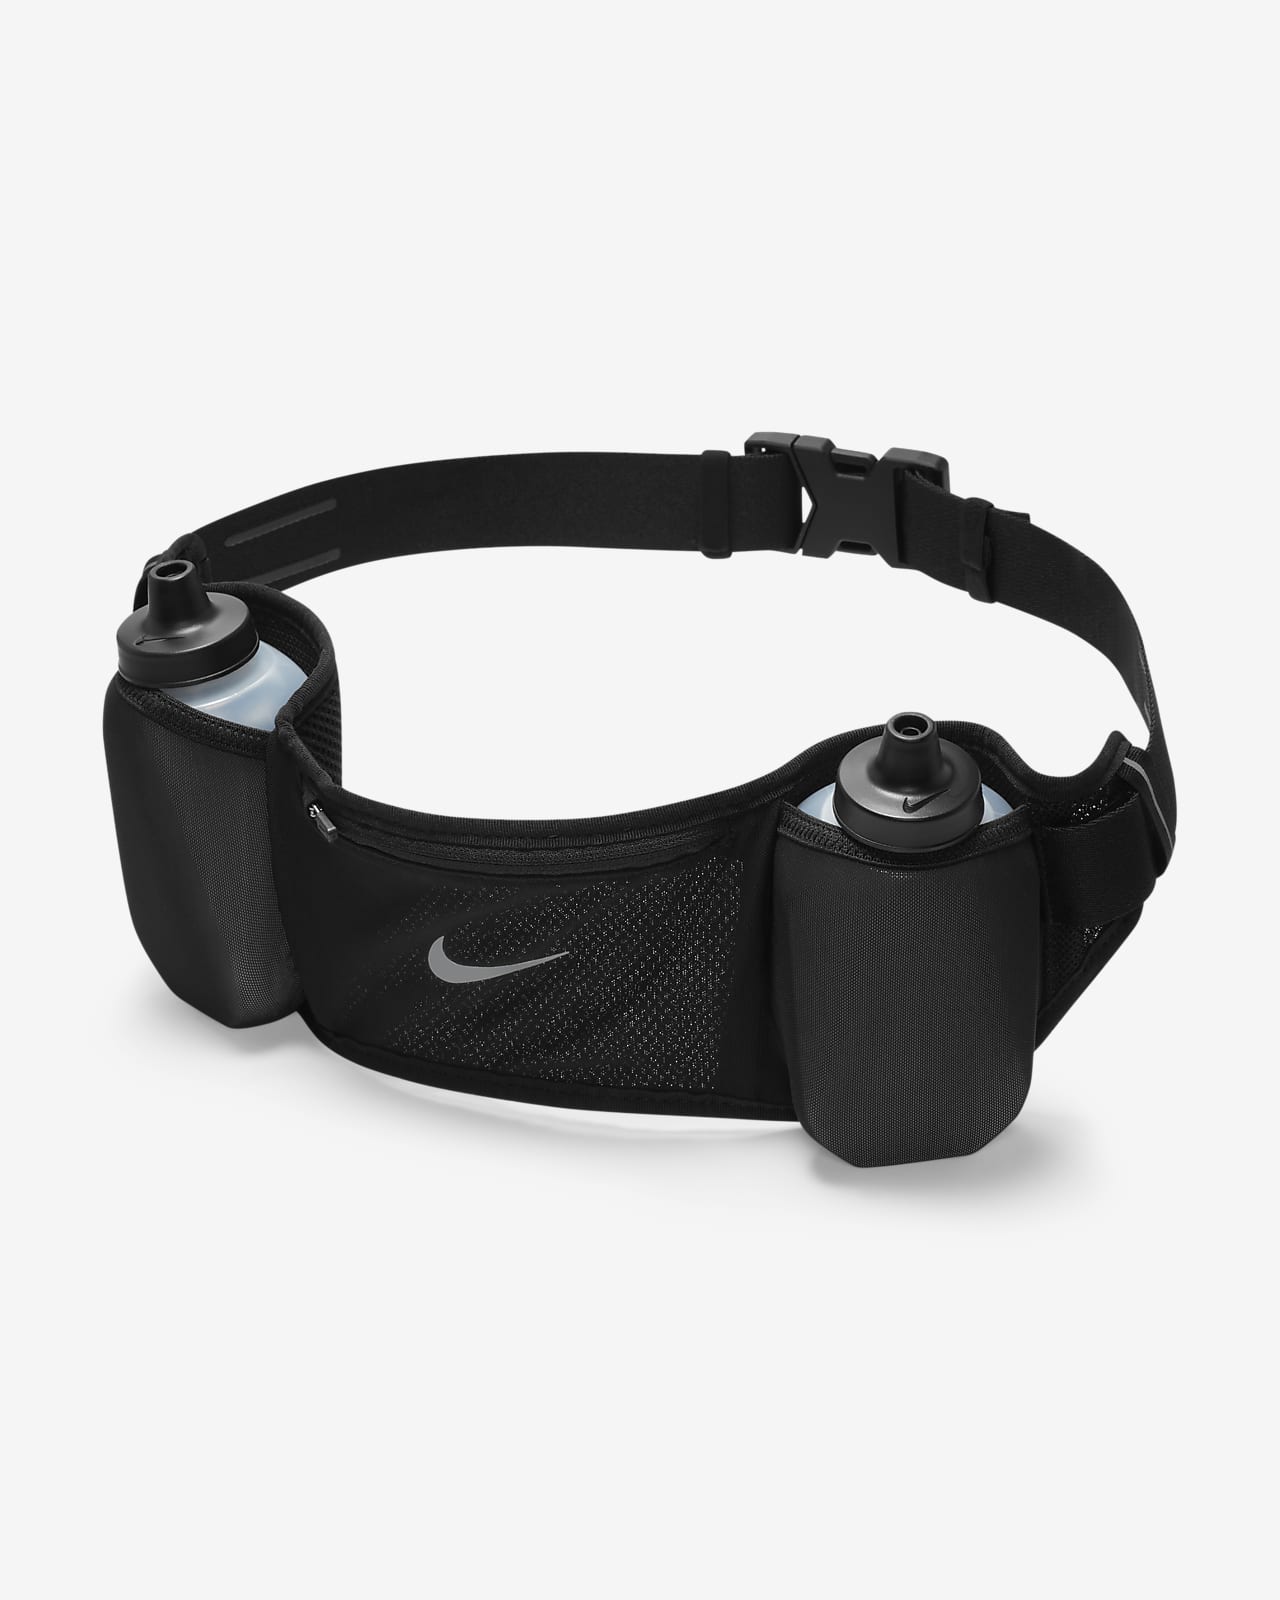 Creo que estoy enfermo inferencia prisa Cinturón de hidratación Nike 24 oz Flex Stride Double. Nike.com